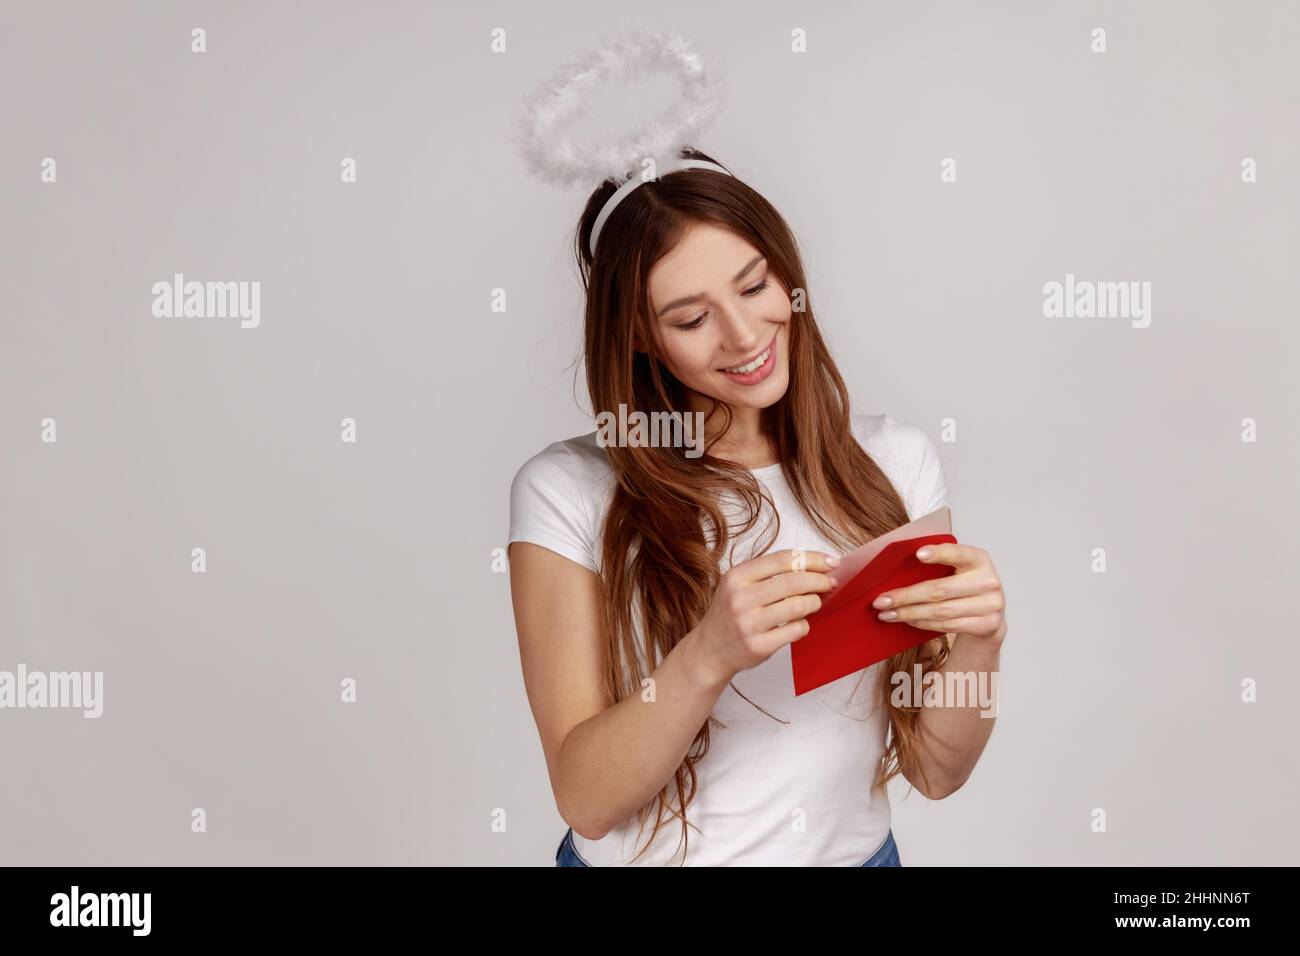 Ritratto di affascinante donna compiacente con nimbus sopra la testa che tiene busta rossa, lettura lettera romantica con sorriso, indossando T-shirt bianca. Studio interno girato isolato su sfondo grigio. Foto Stock